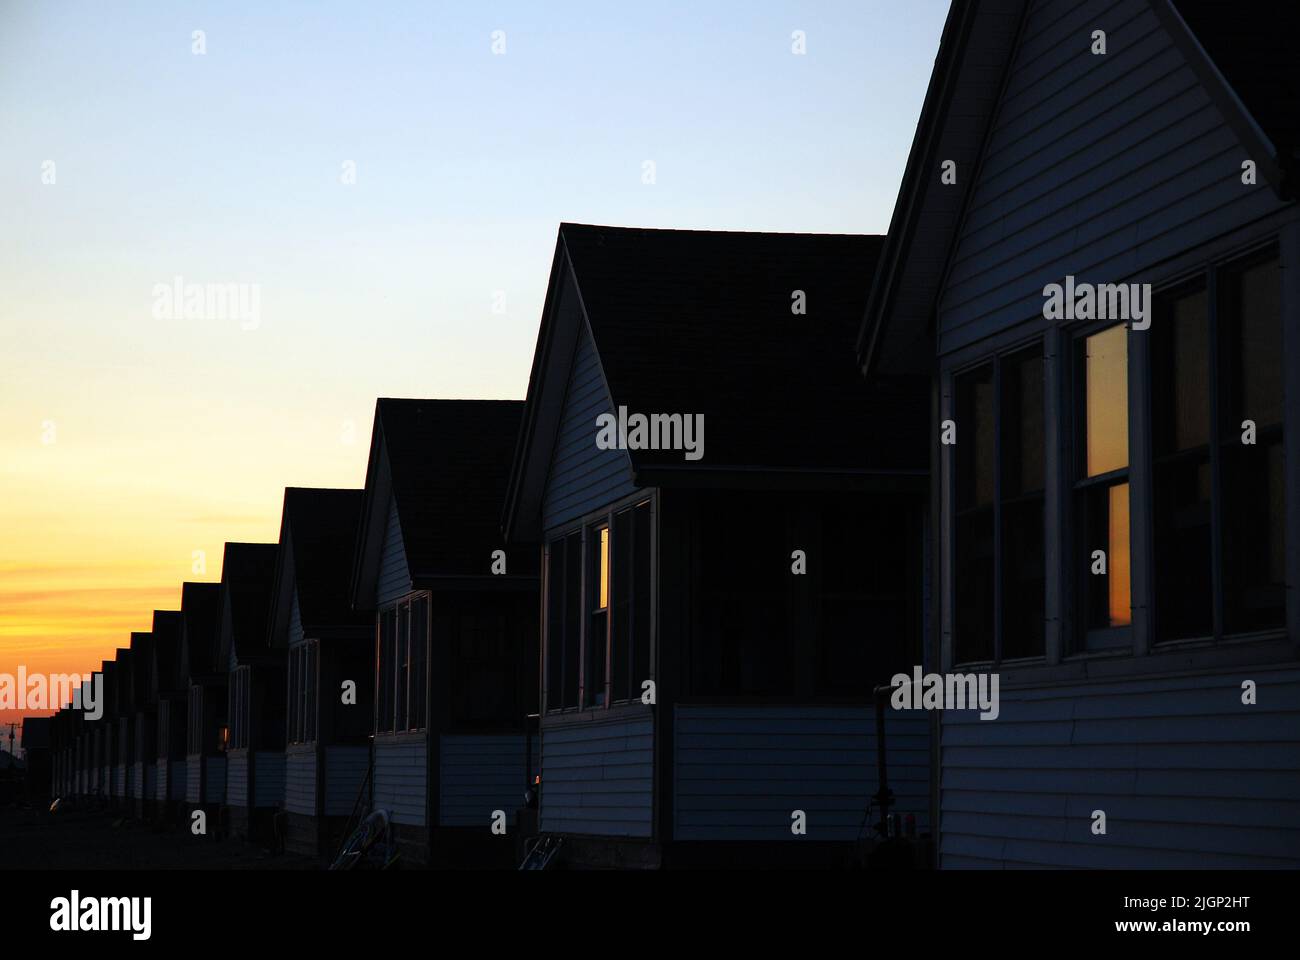 Eine Reihe von identischen bescheidenen kleinen Häusern und Häusern erstrecken sich über den Horizont und reflektieren den Sonnenuntergang Himmel in den Fenstern Stockfoto